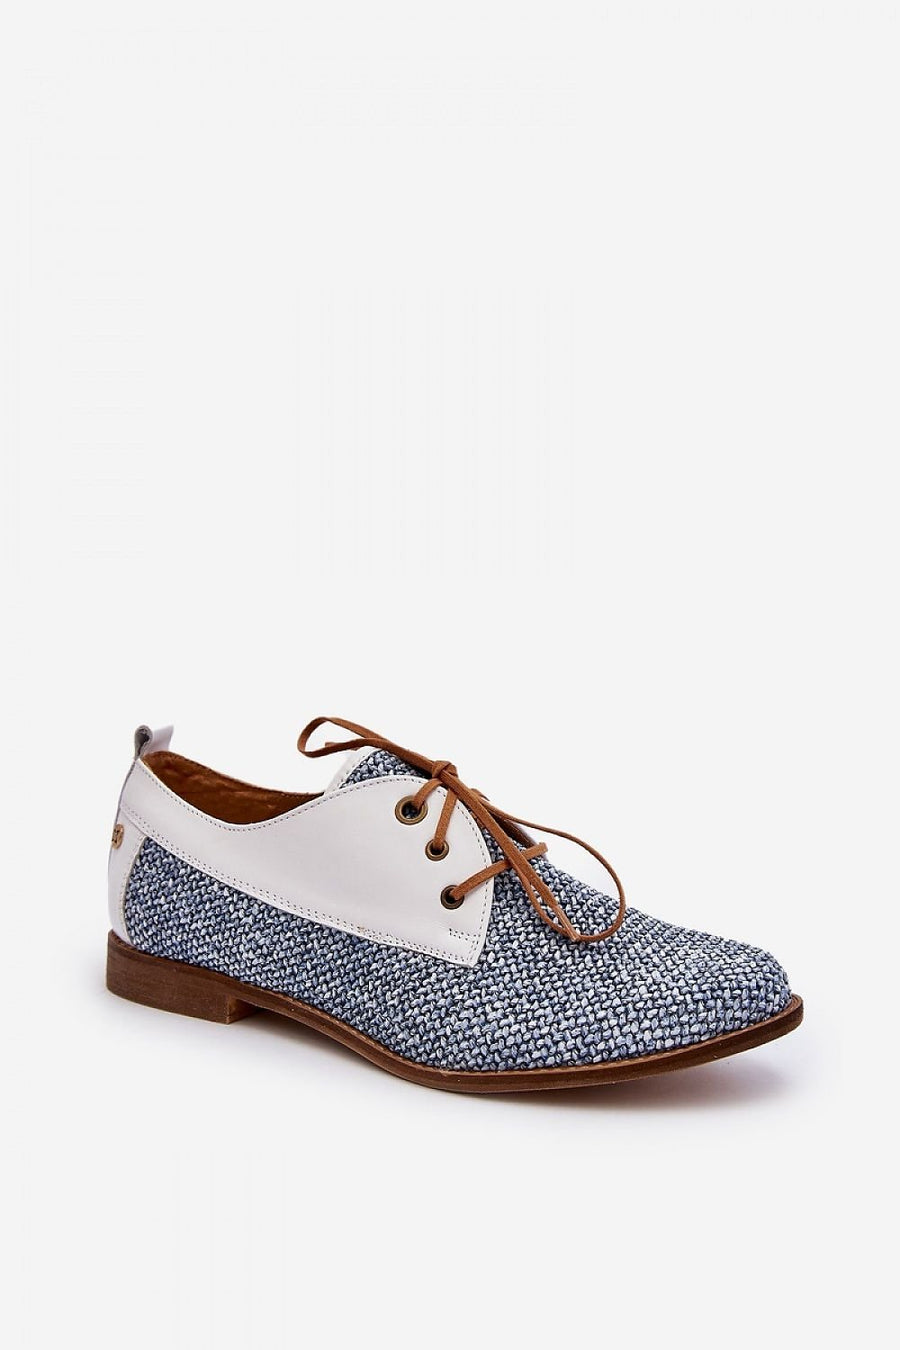 Schuhe mit Absatz Model 193929 Step in style